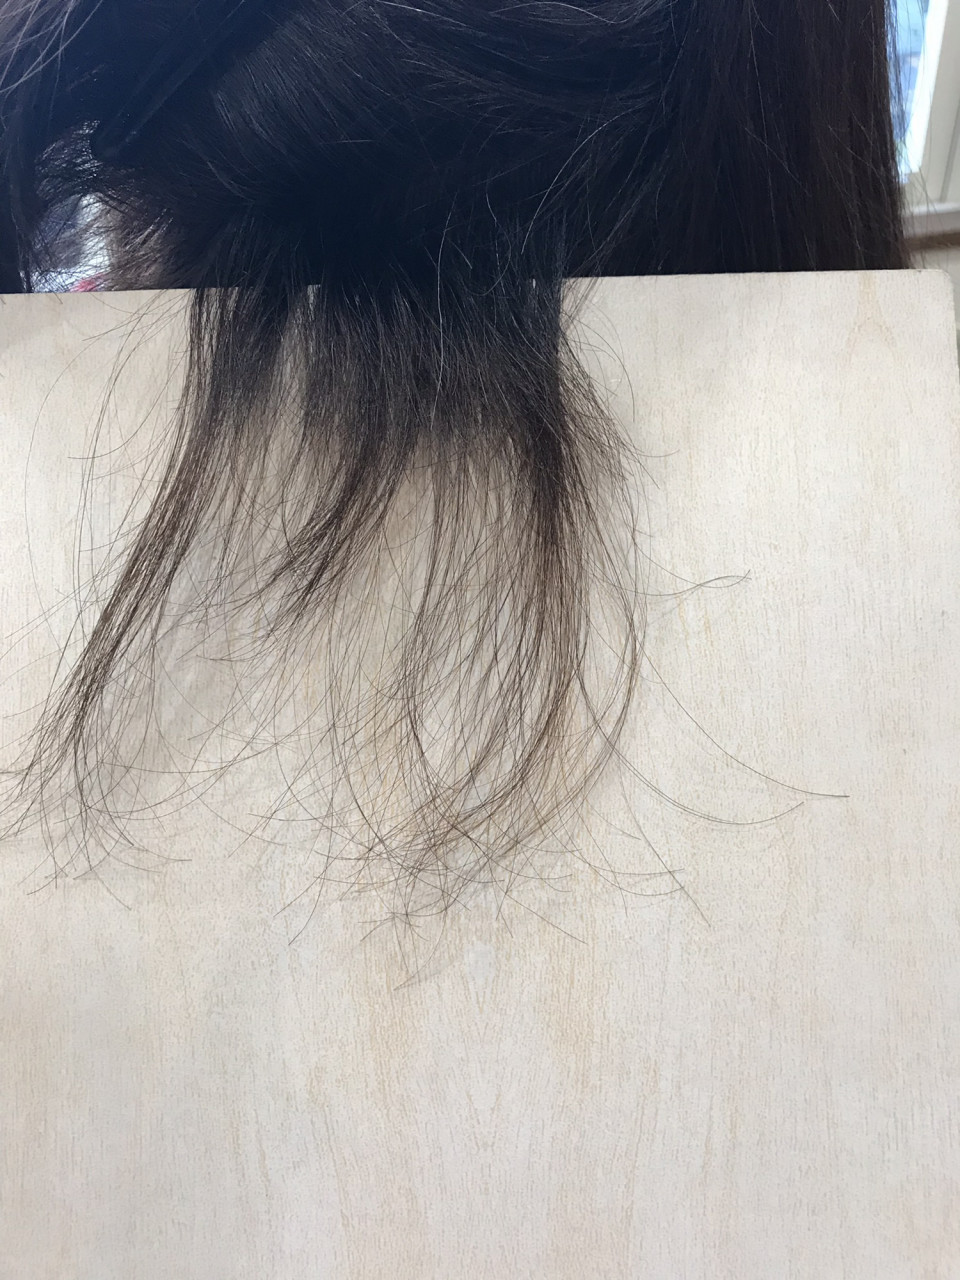 プルエクステ辛口レビュー メリットデメリットは 19年最新版 エクステ 高知 髪質改善とドライヘッドスパに特化した高知の美容室hair Spa Trico ヘアーアンドスパトリコ 公文雄介のオウンドブログ